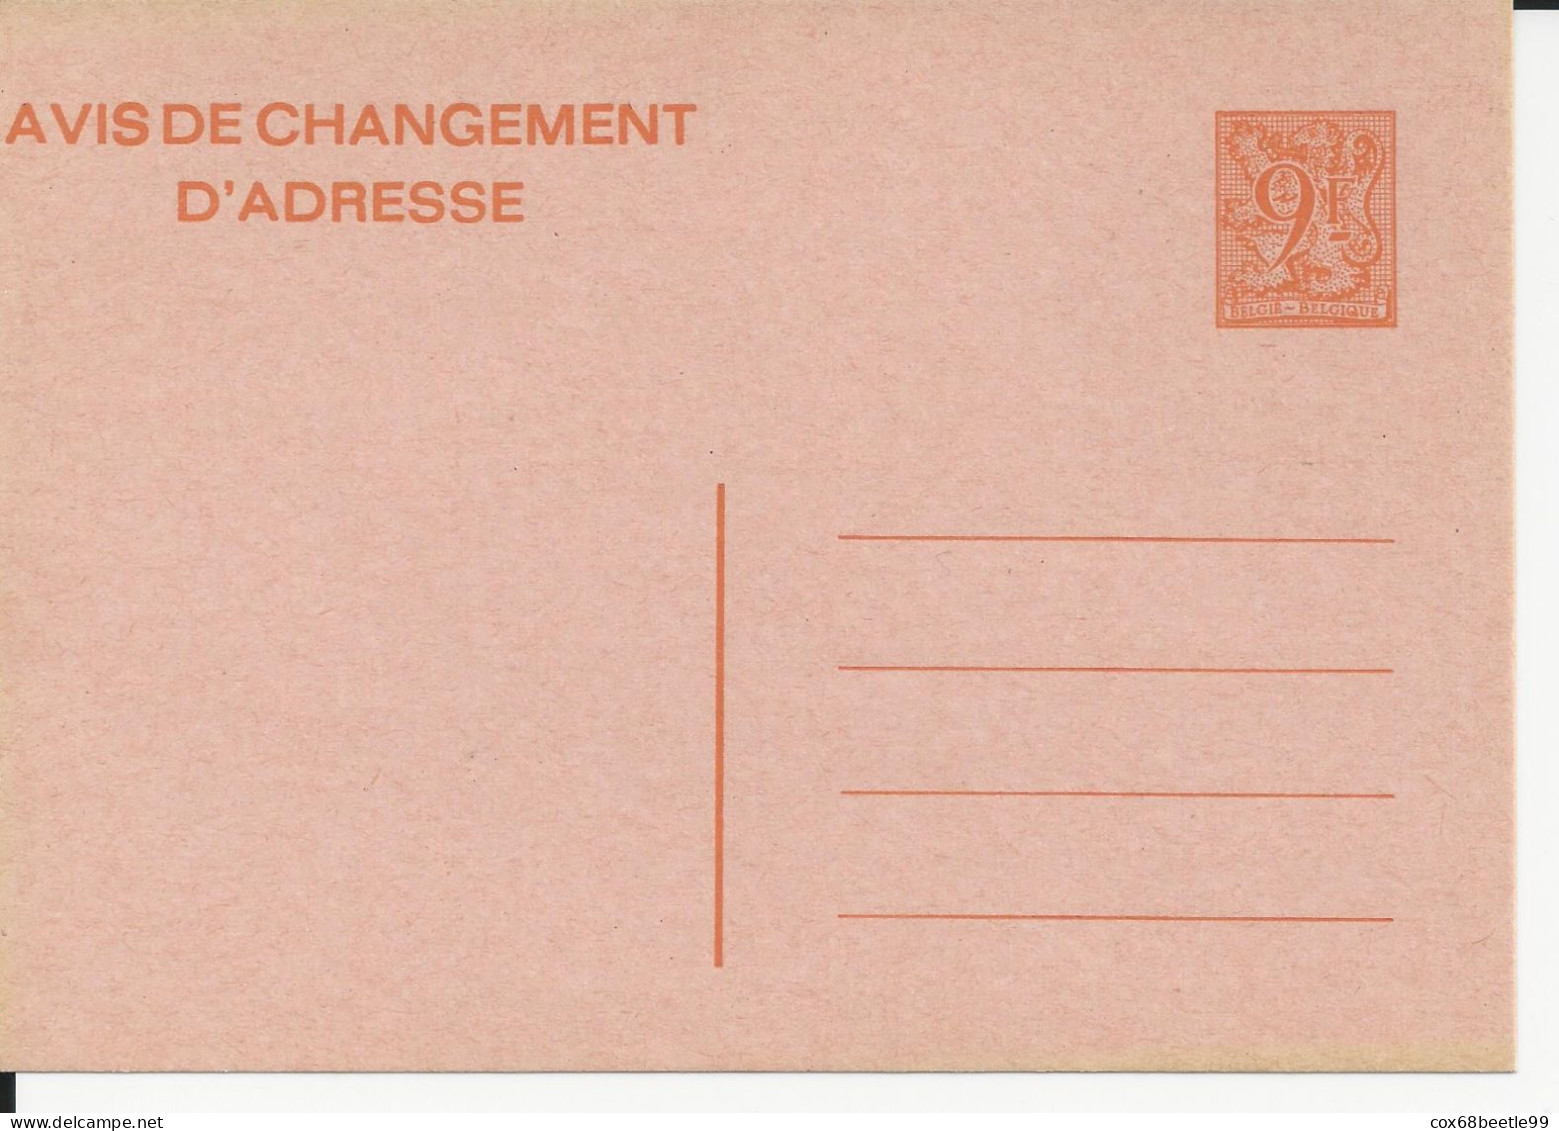 Belgique Belgie Avis Changement D'adresse 9 Francs Neuf Non Circulé - Adressenänderungen